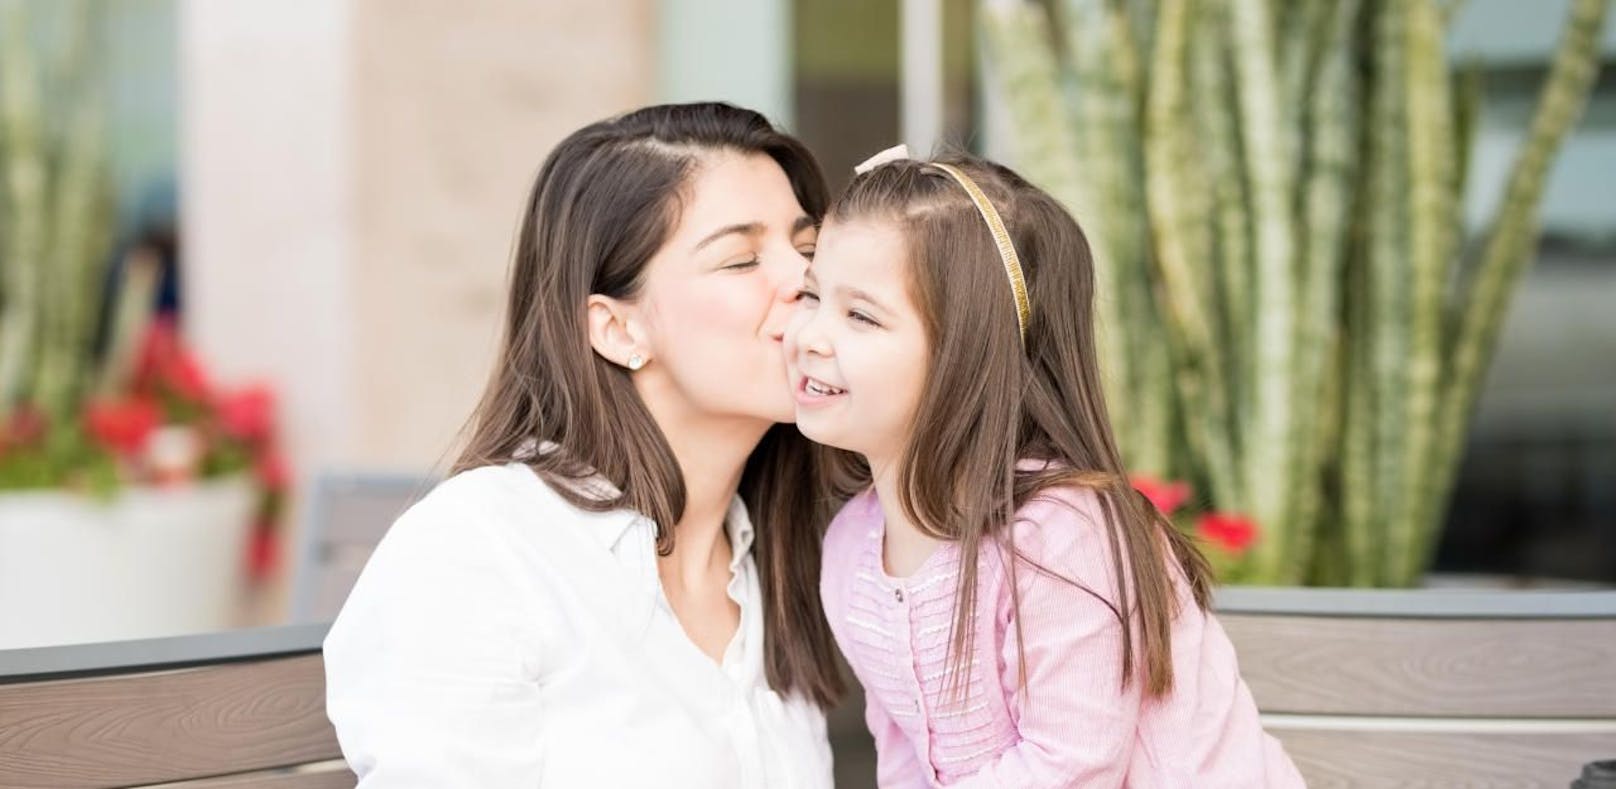 Eltern sollten unterschreiben, dass sich Kinder von &quot;Ranghöheren&quot; küssen lassen müssen, wenn diese das wollen.